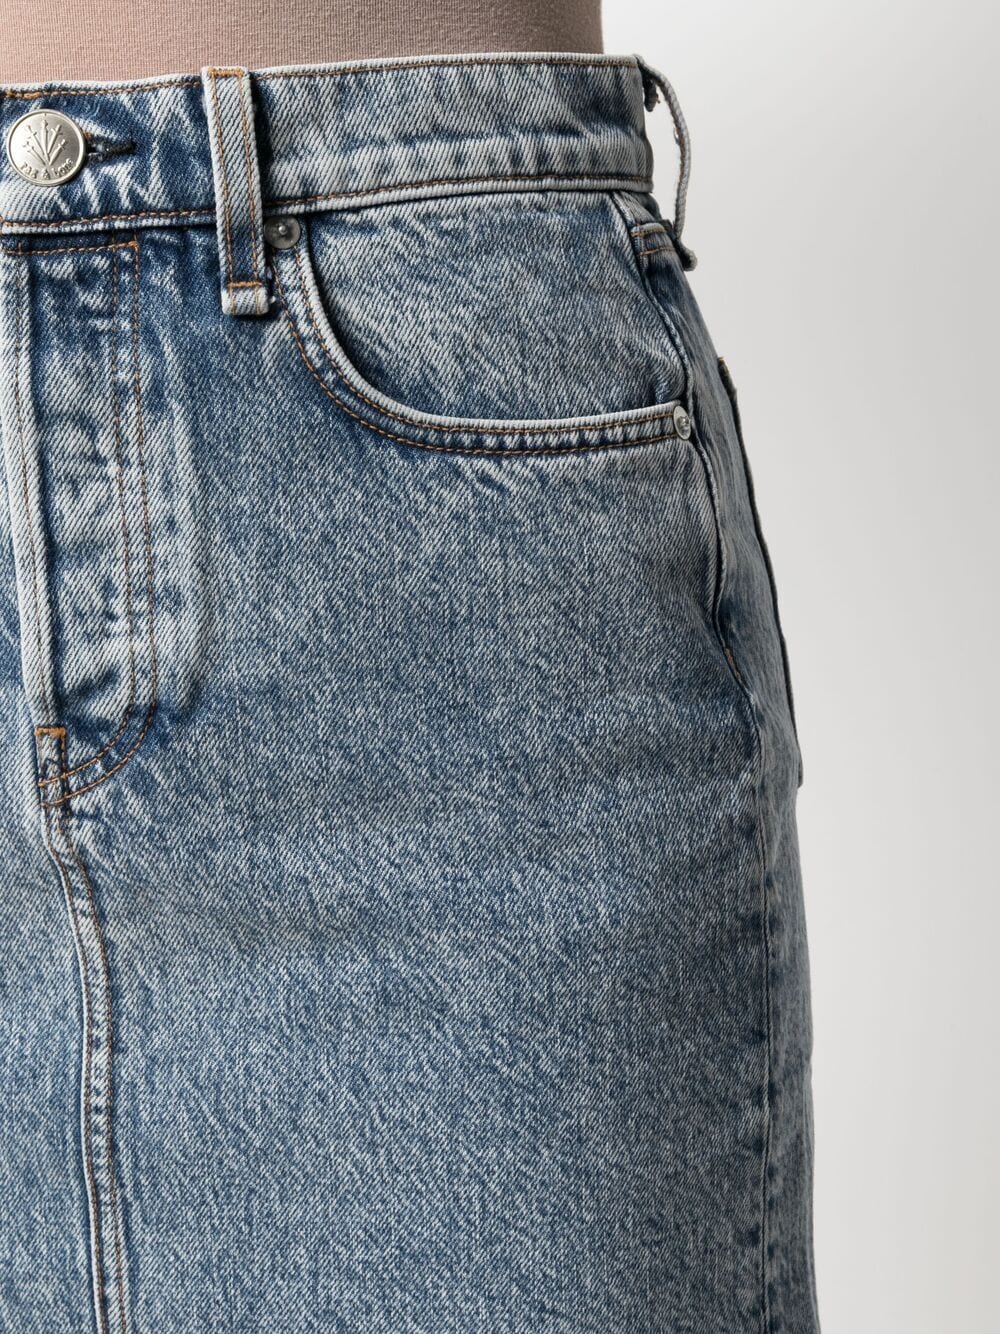 фото Rag & bone облегающая джинсовая юбка